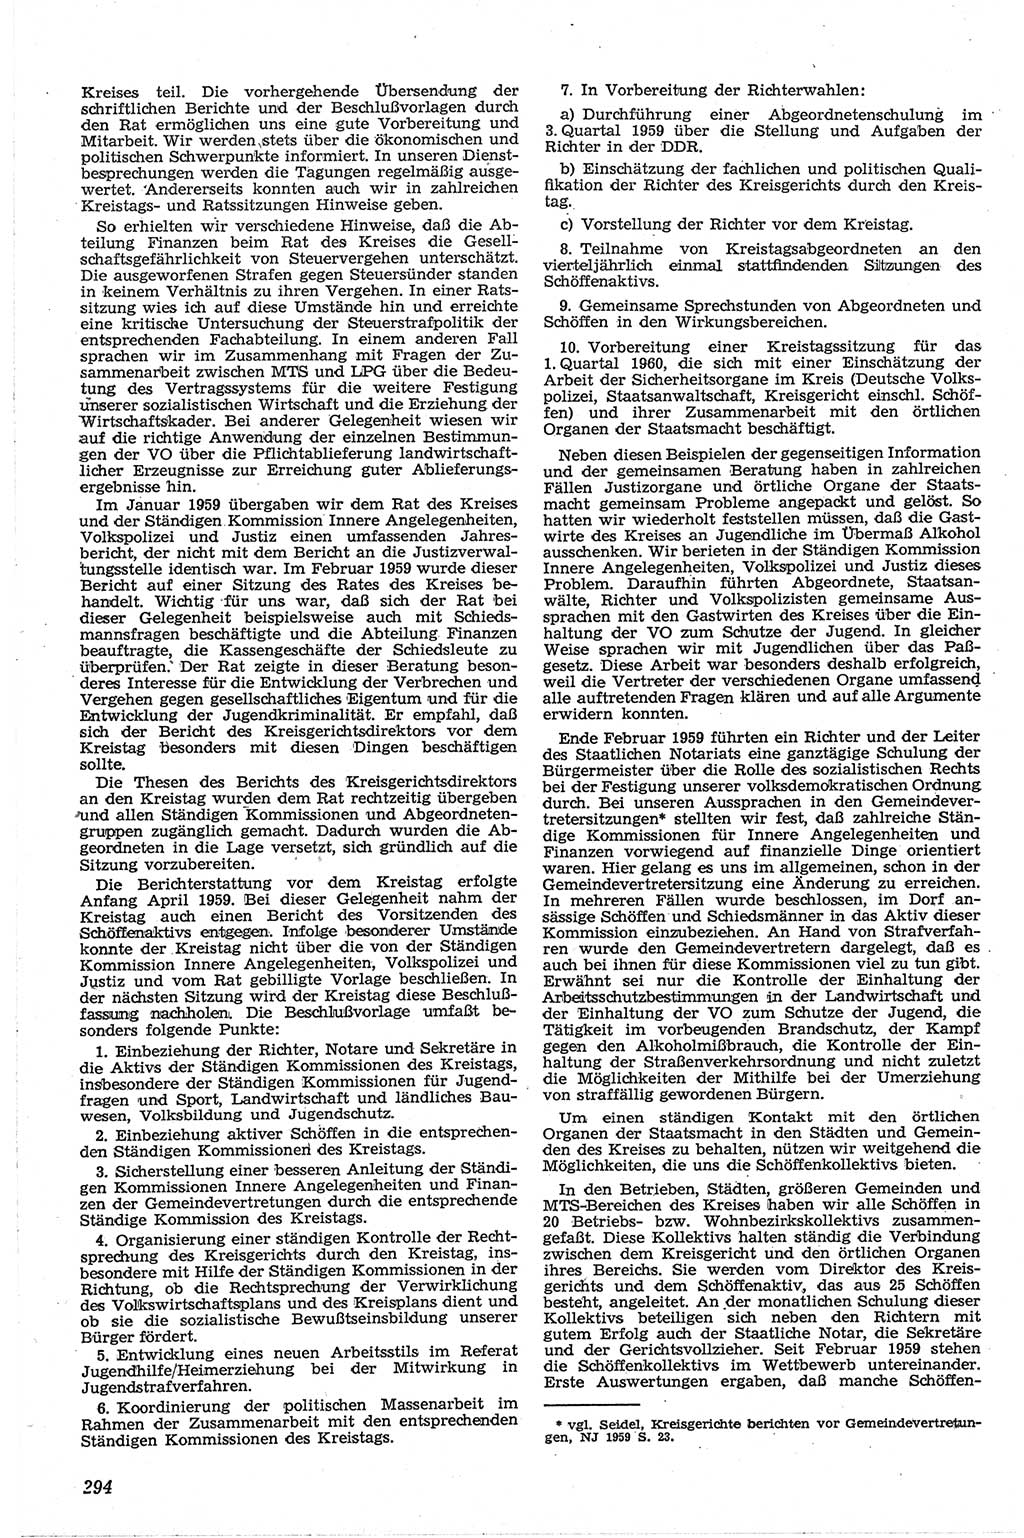 Neue Justiz (NJ), Zeitschrift für Recht und Rechtswissenschaft [Deutsche Demokratische Republik (DDR)], 13. Jahrgang 1959, Seite 294 (NJ DDR 1959, S. 294)